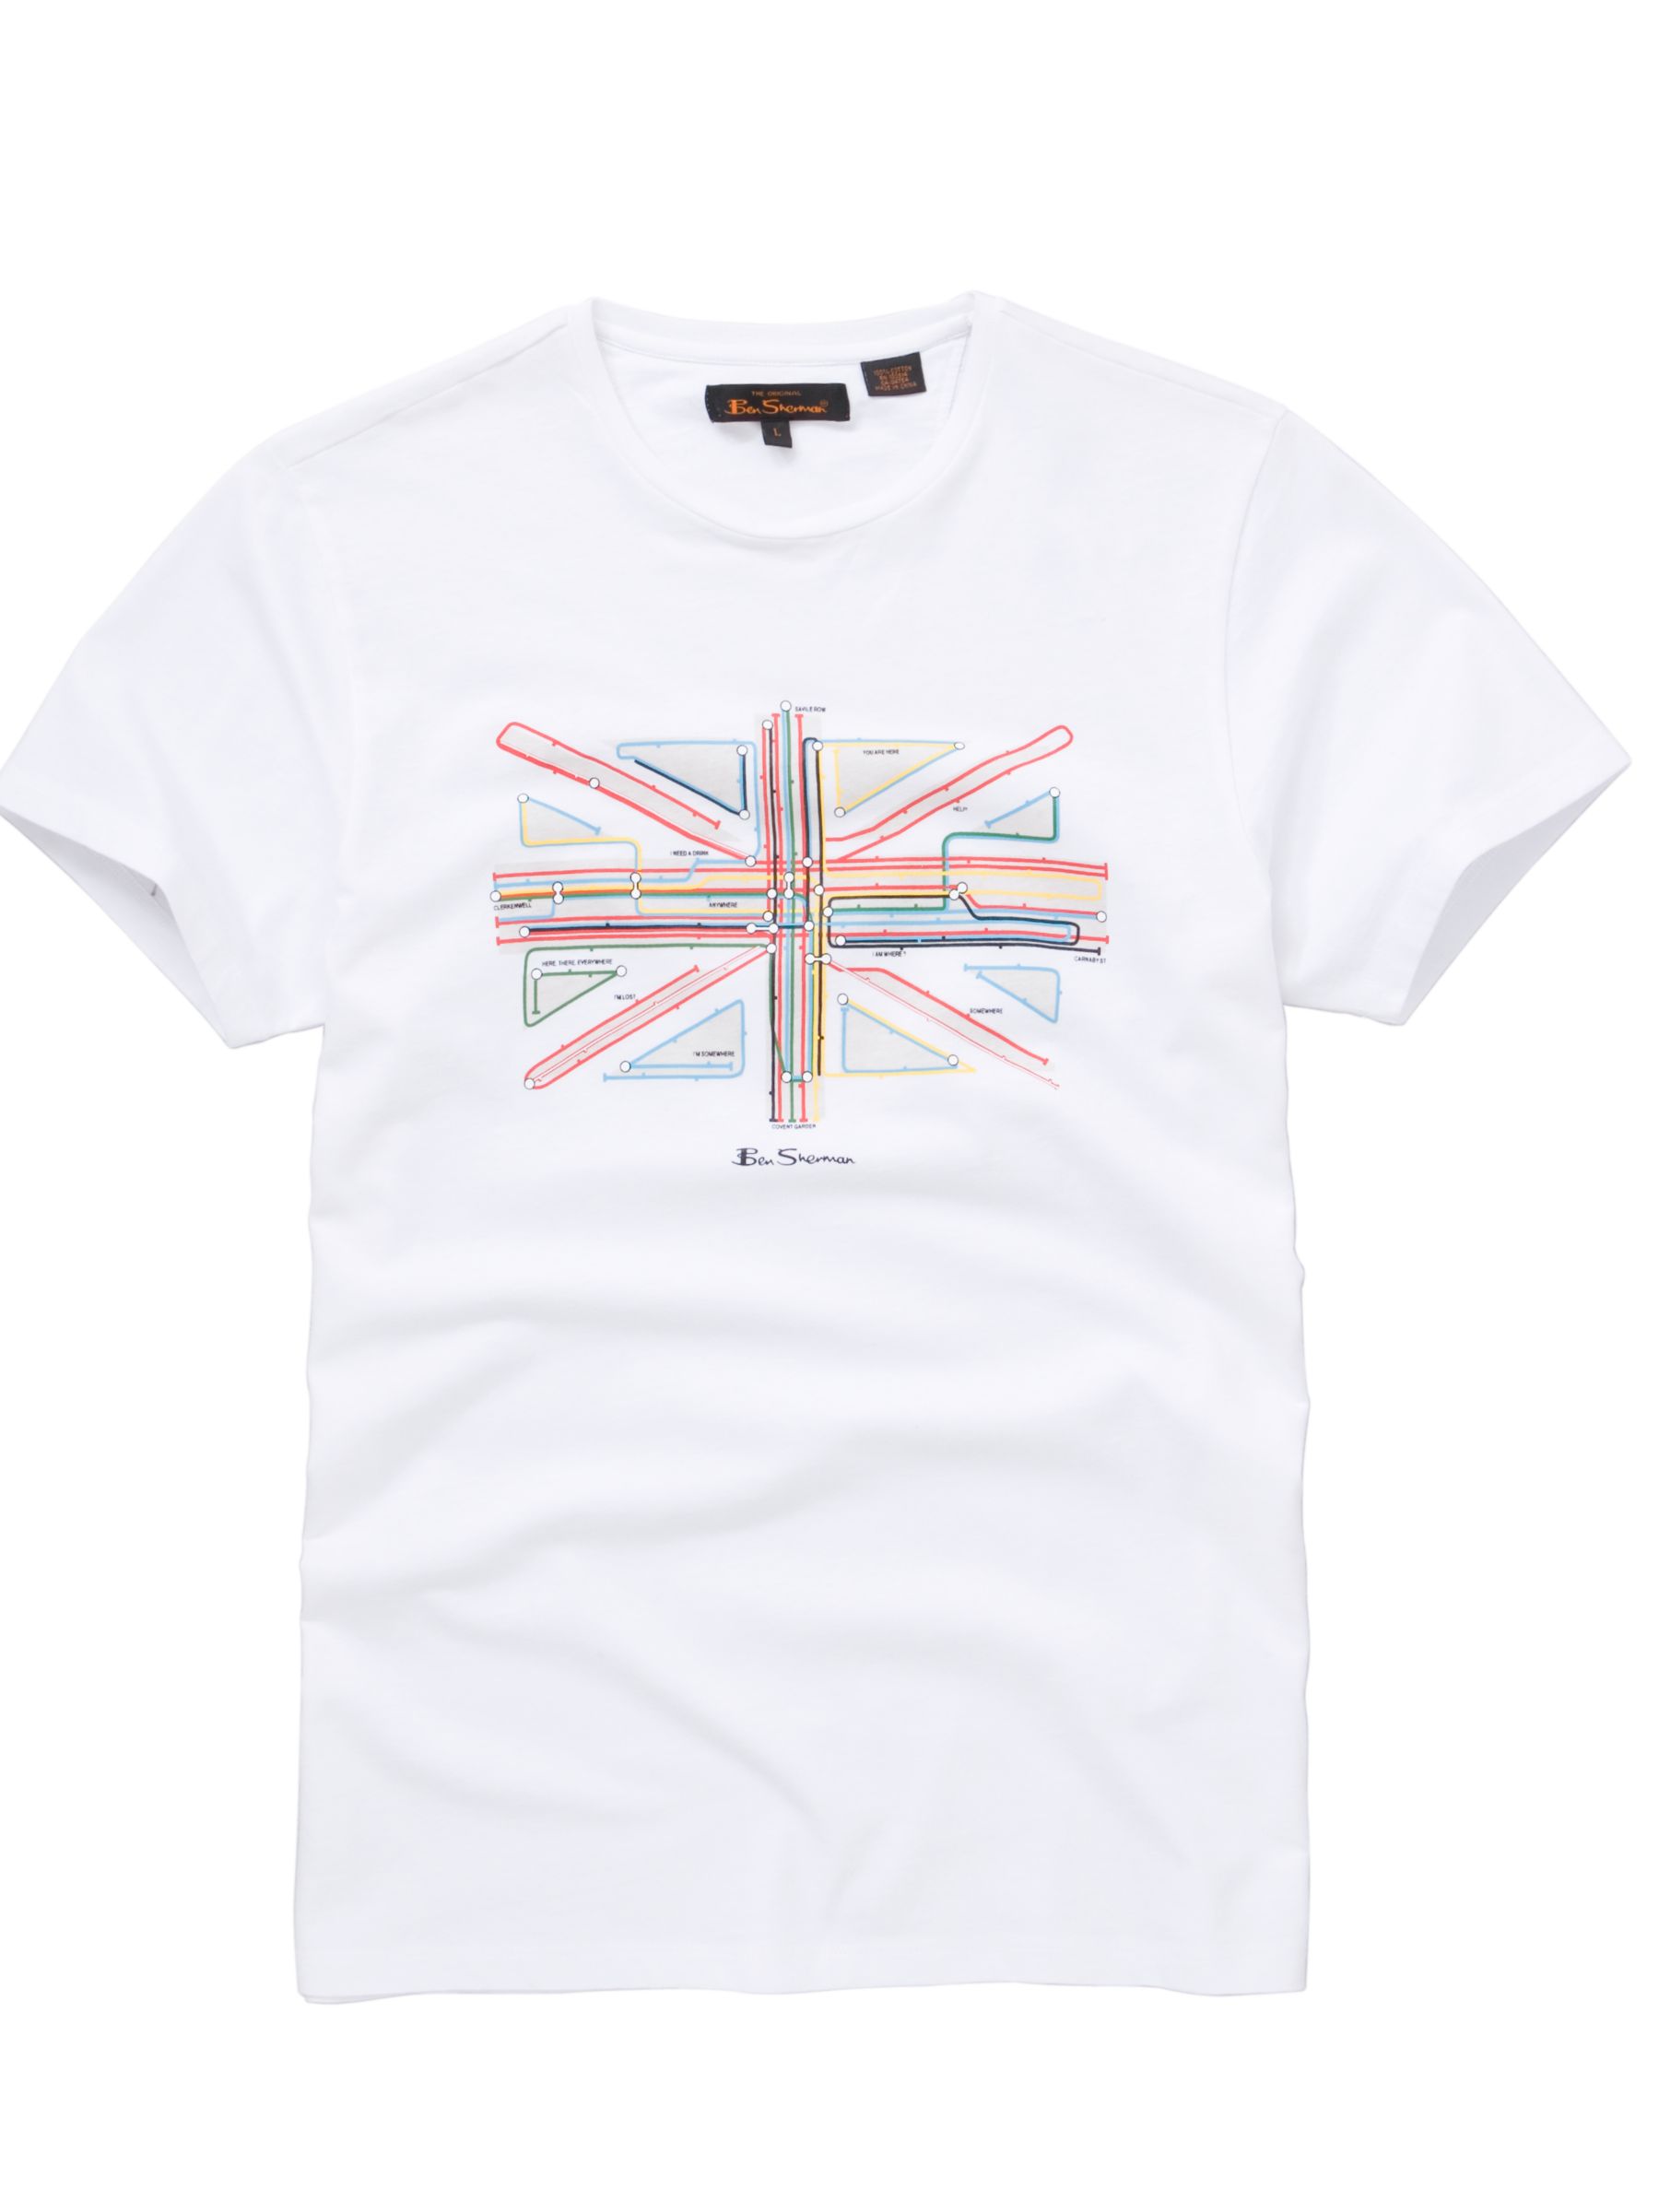 Union Jack Tube T-Shirt, White